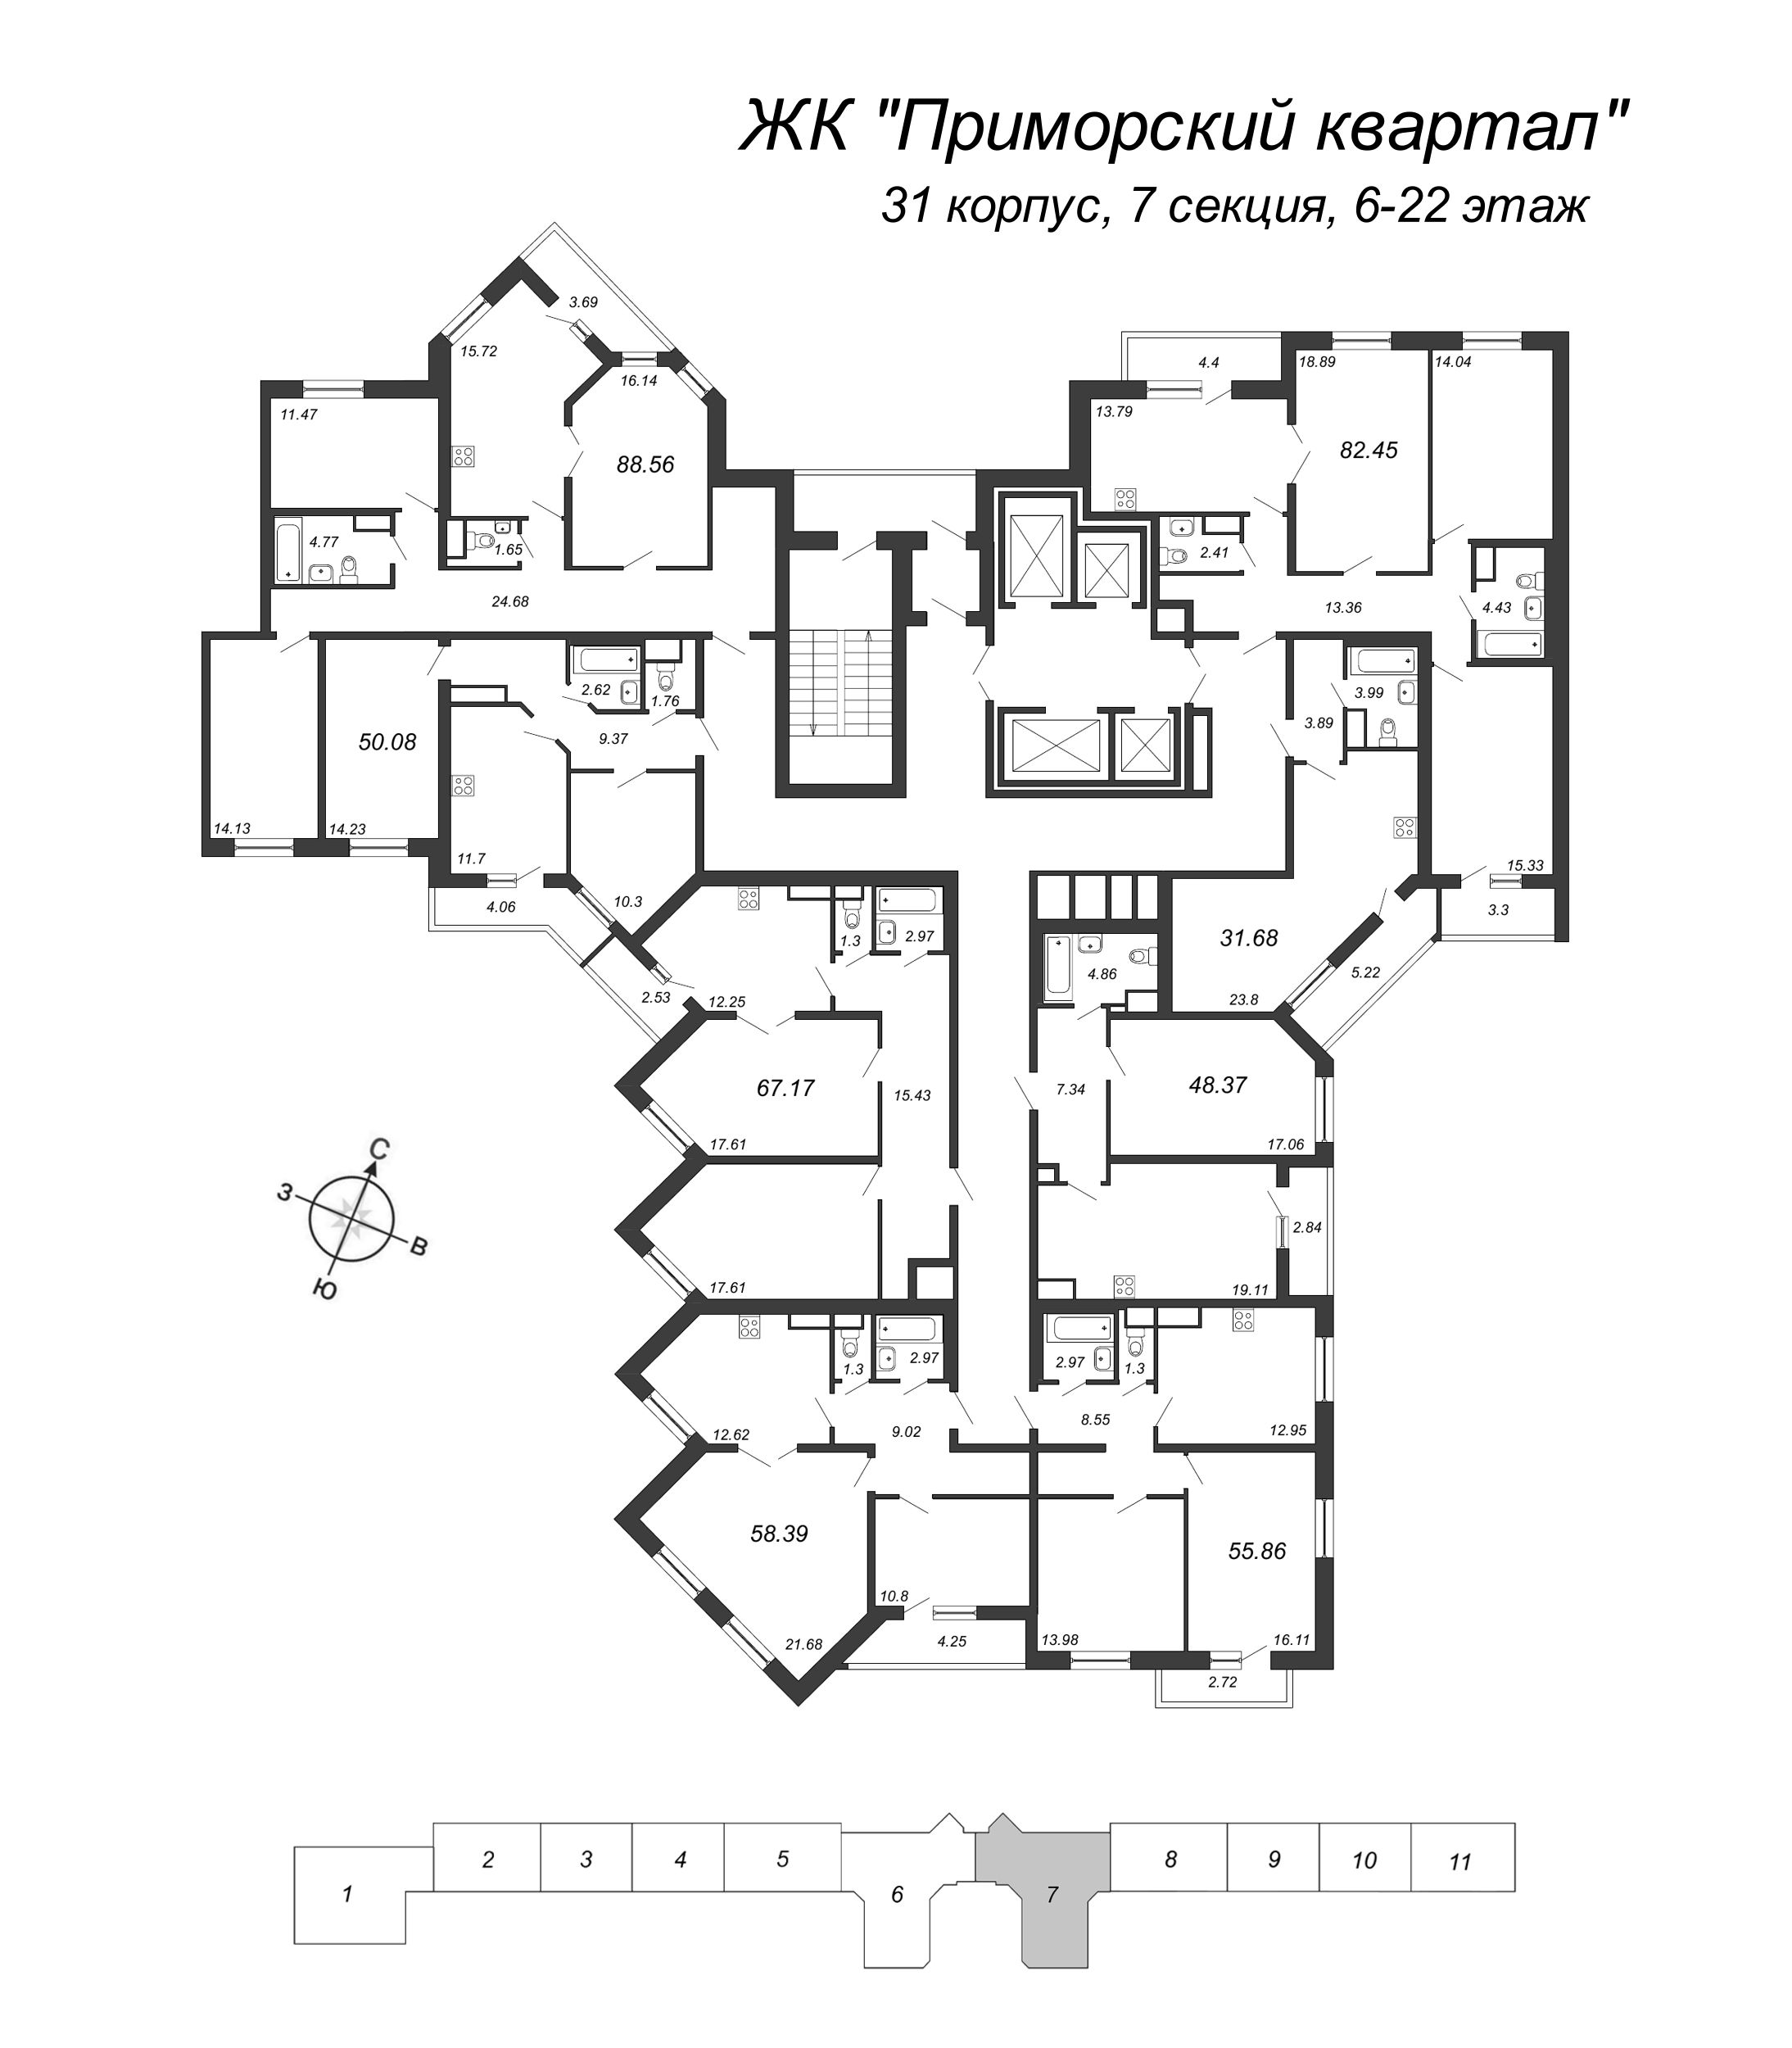 2-комнатная квартира, 50.08 м² в ЖК "Приморский квартал" - планировка этажа